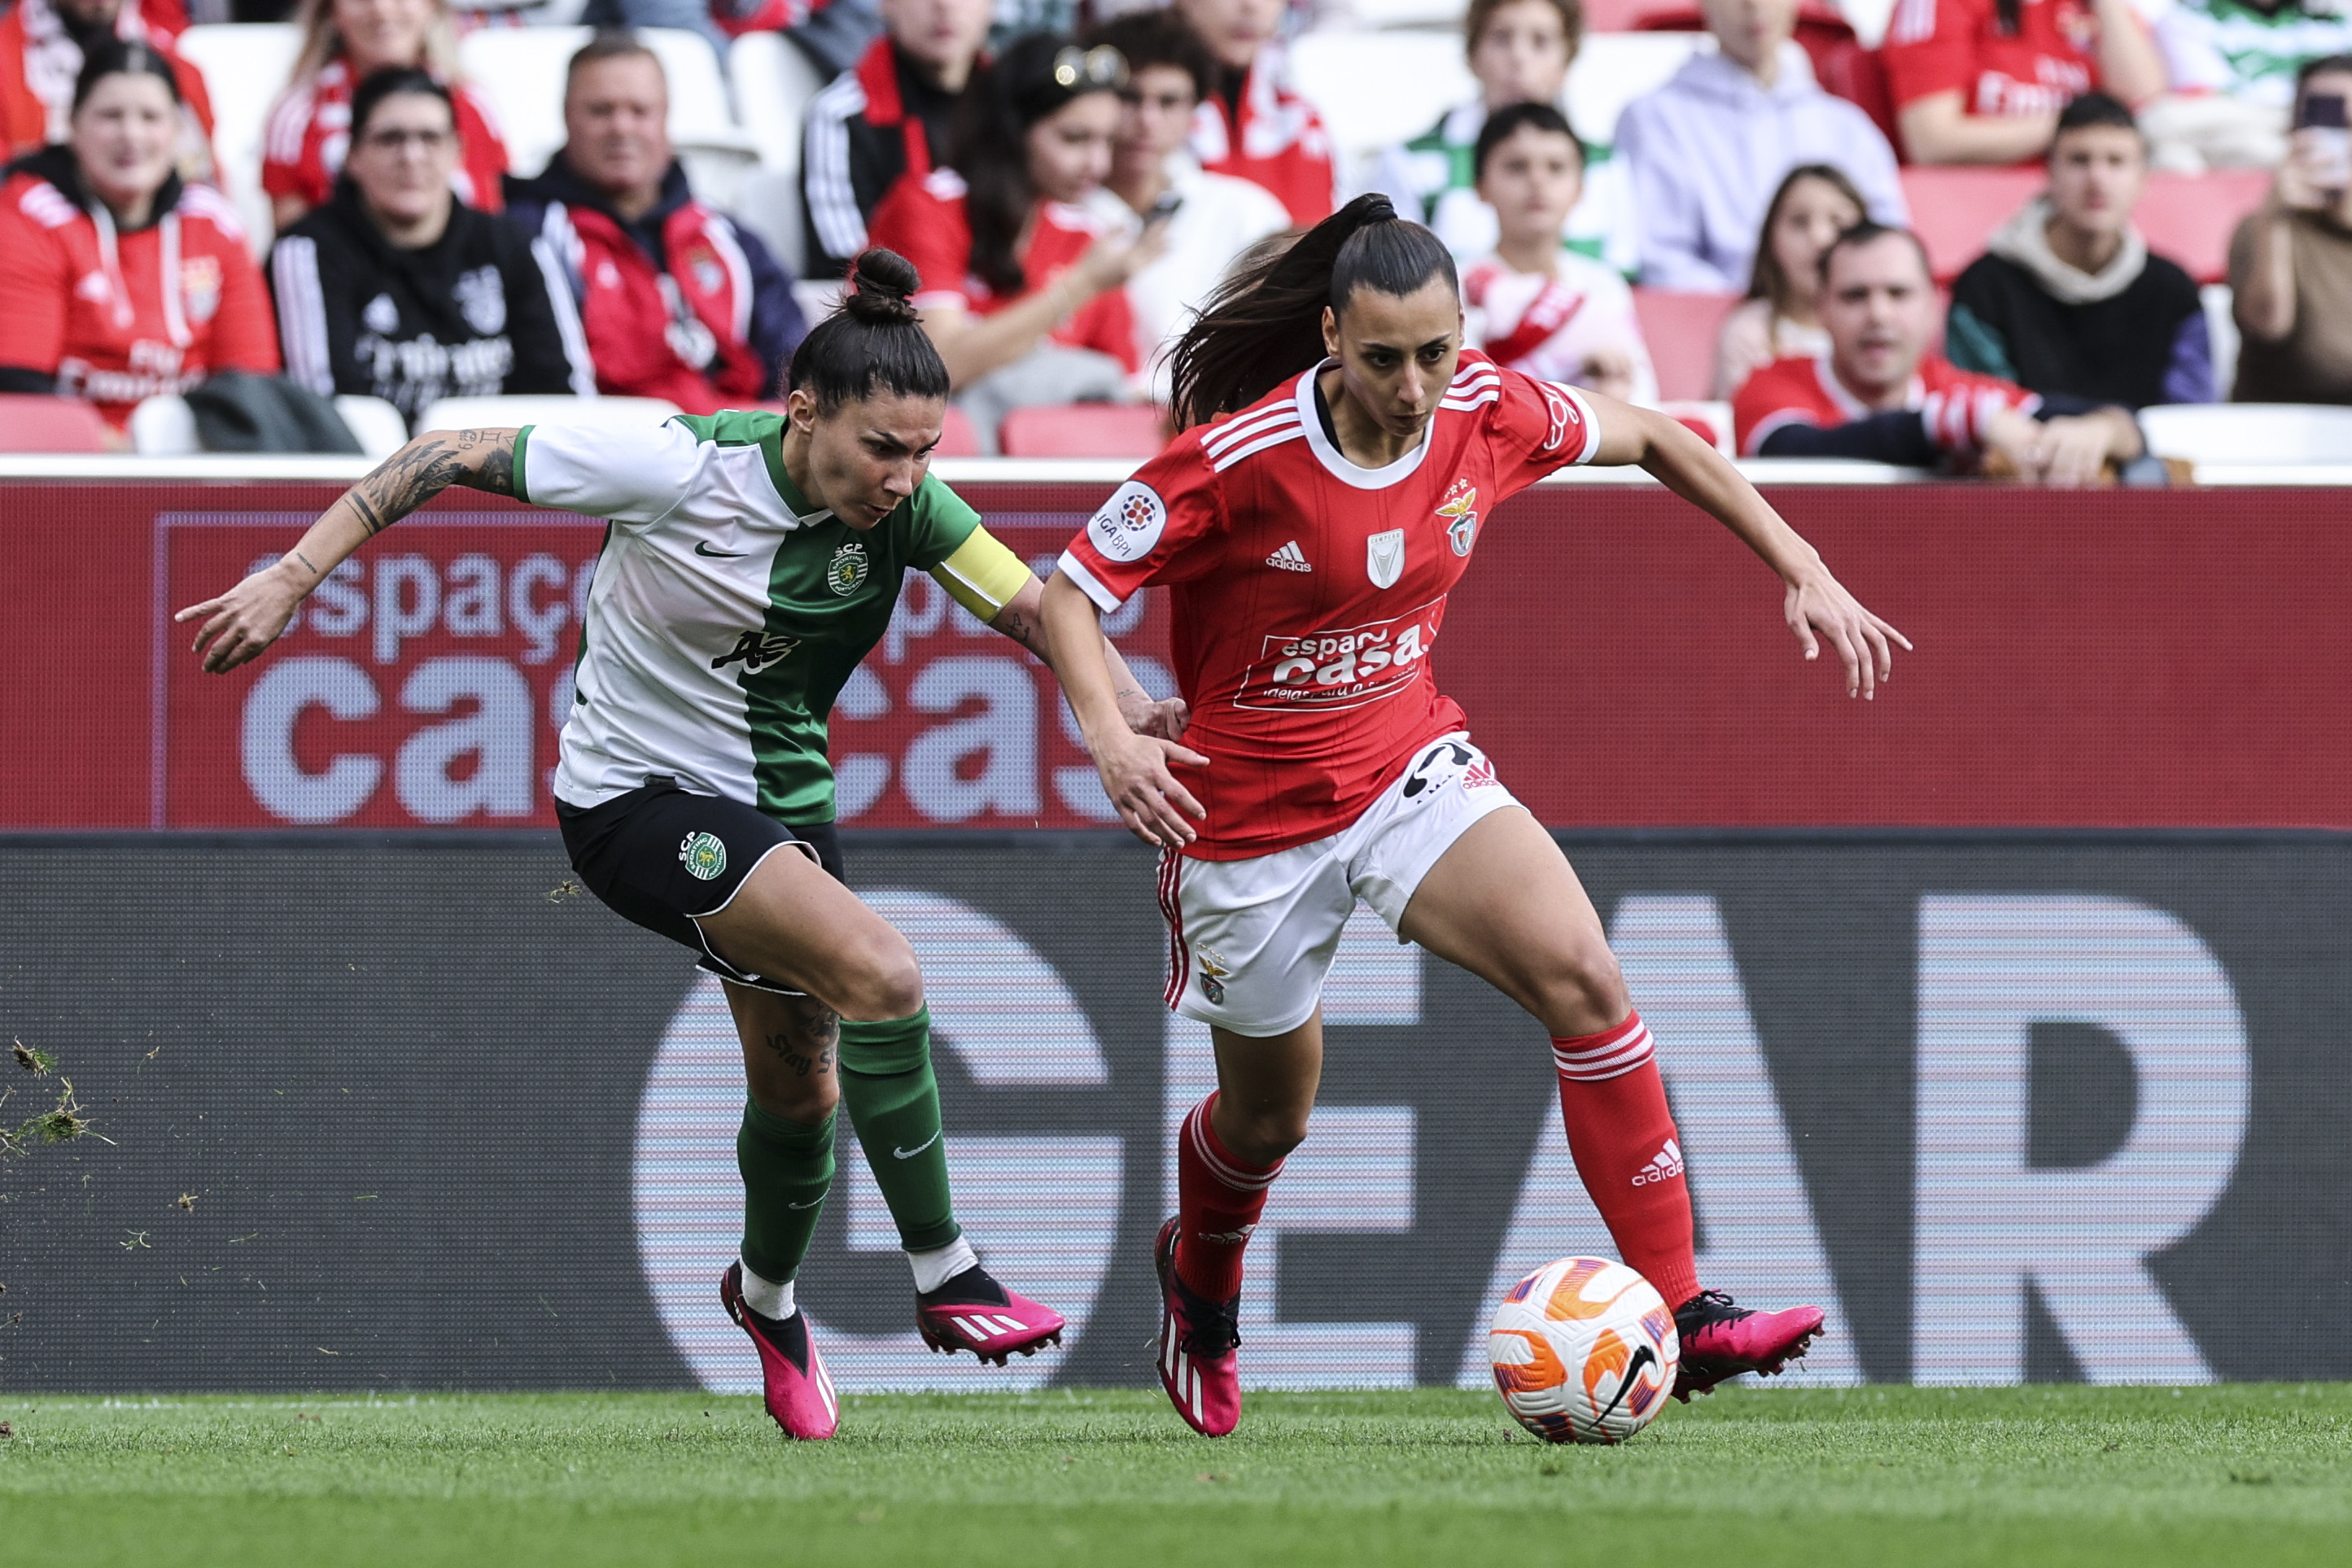 O Benfica goleou o Sporting e há mais um número histórico para o futebol  feminino em Portugal: 15.032